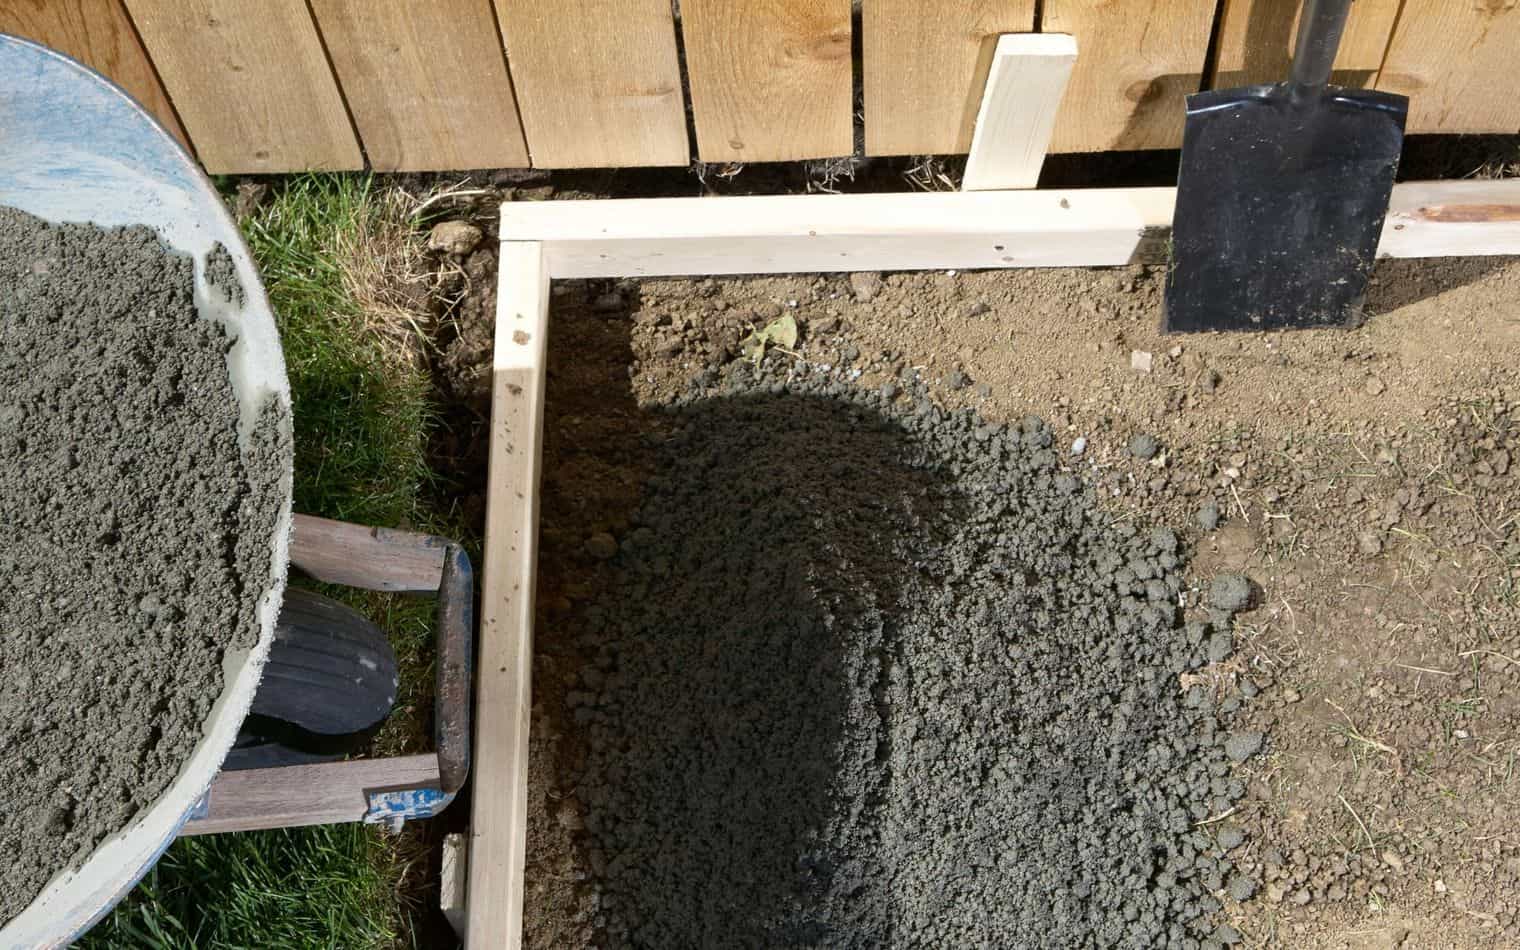 Pour Concrete in Backyard